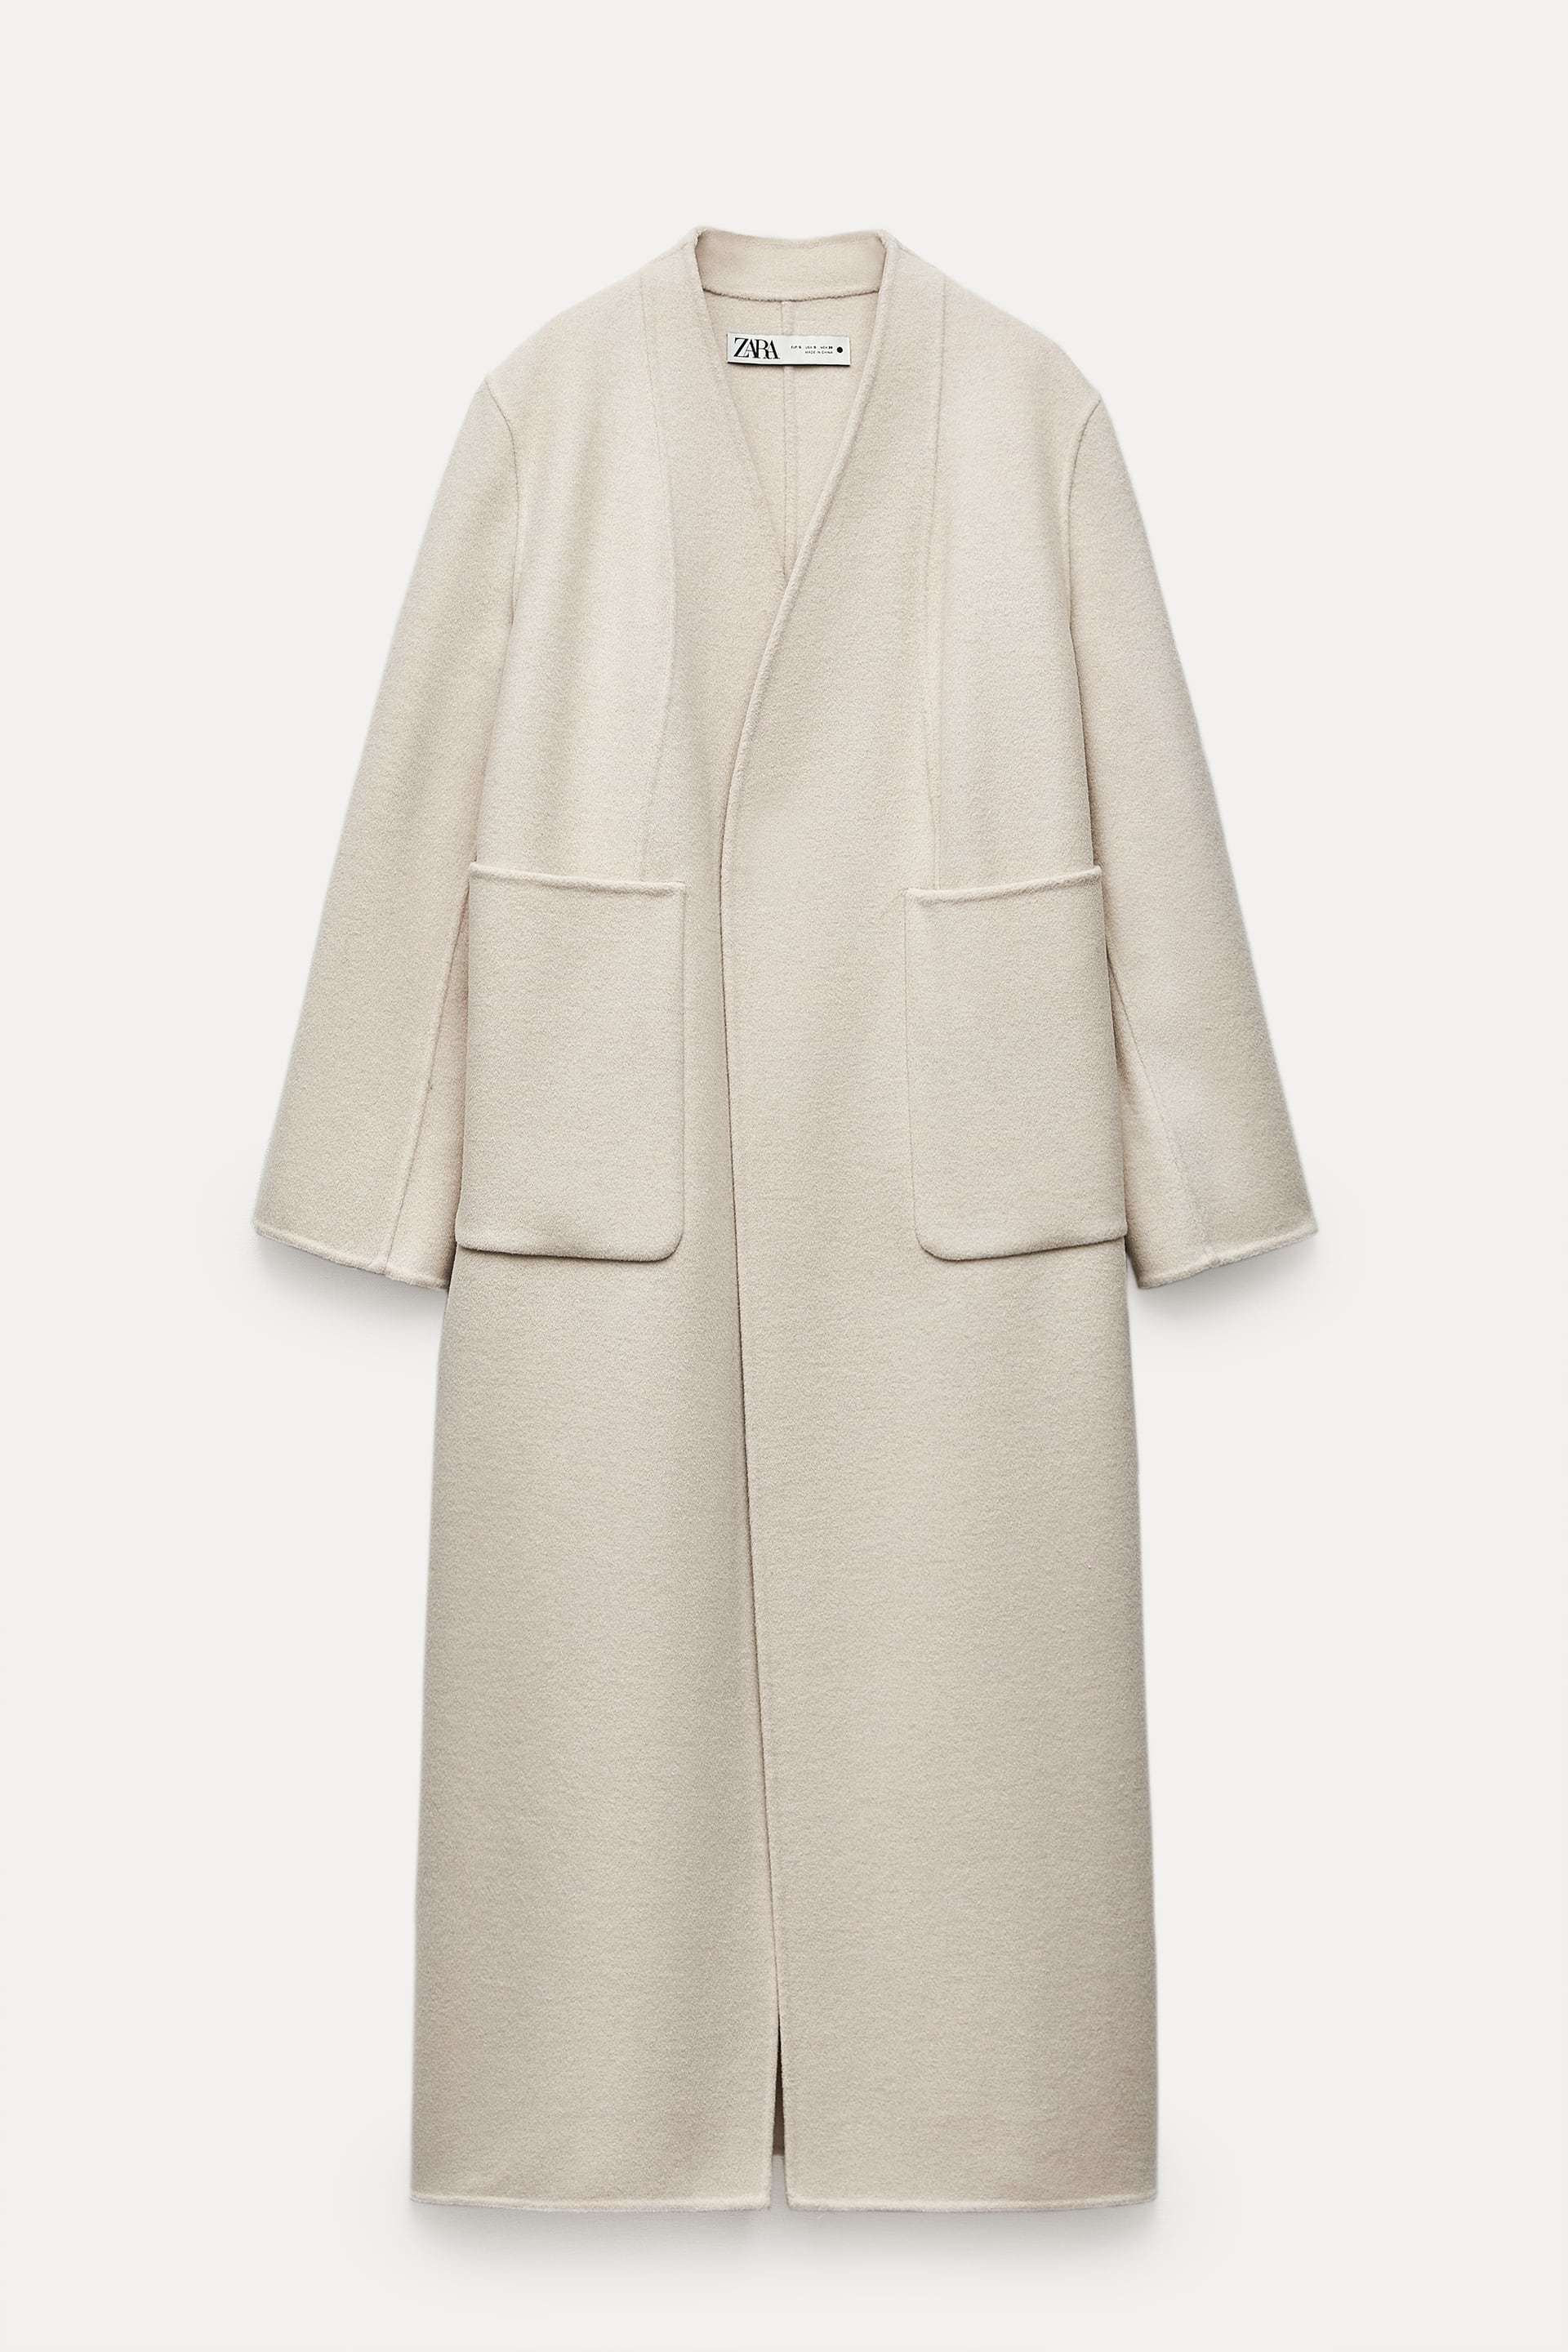 Abrigo largo crudo con lana, de Zara (169 euros).